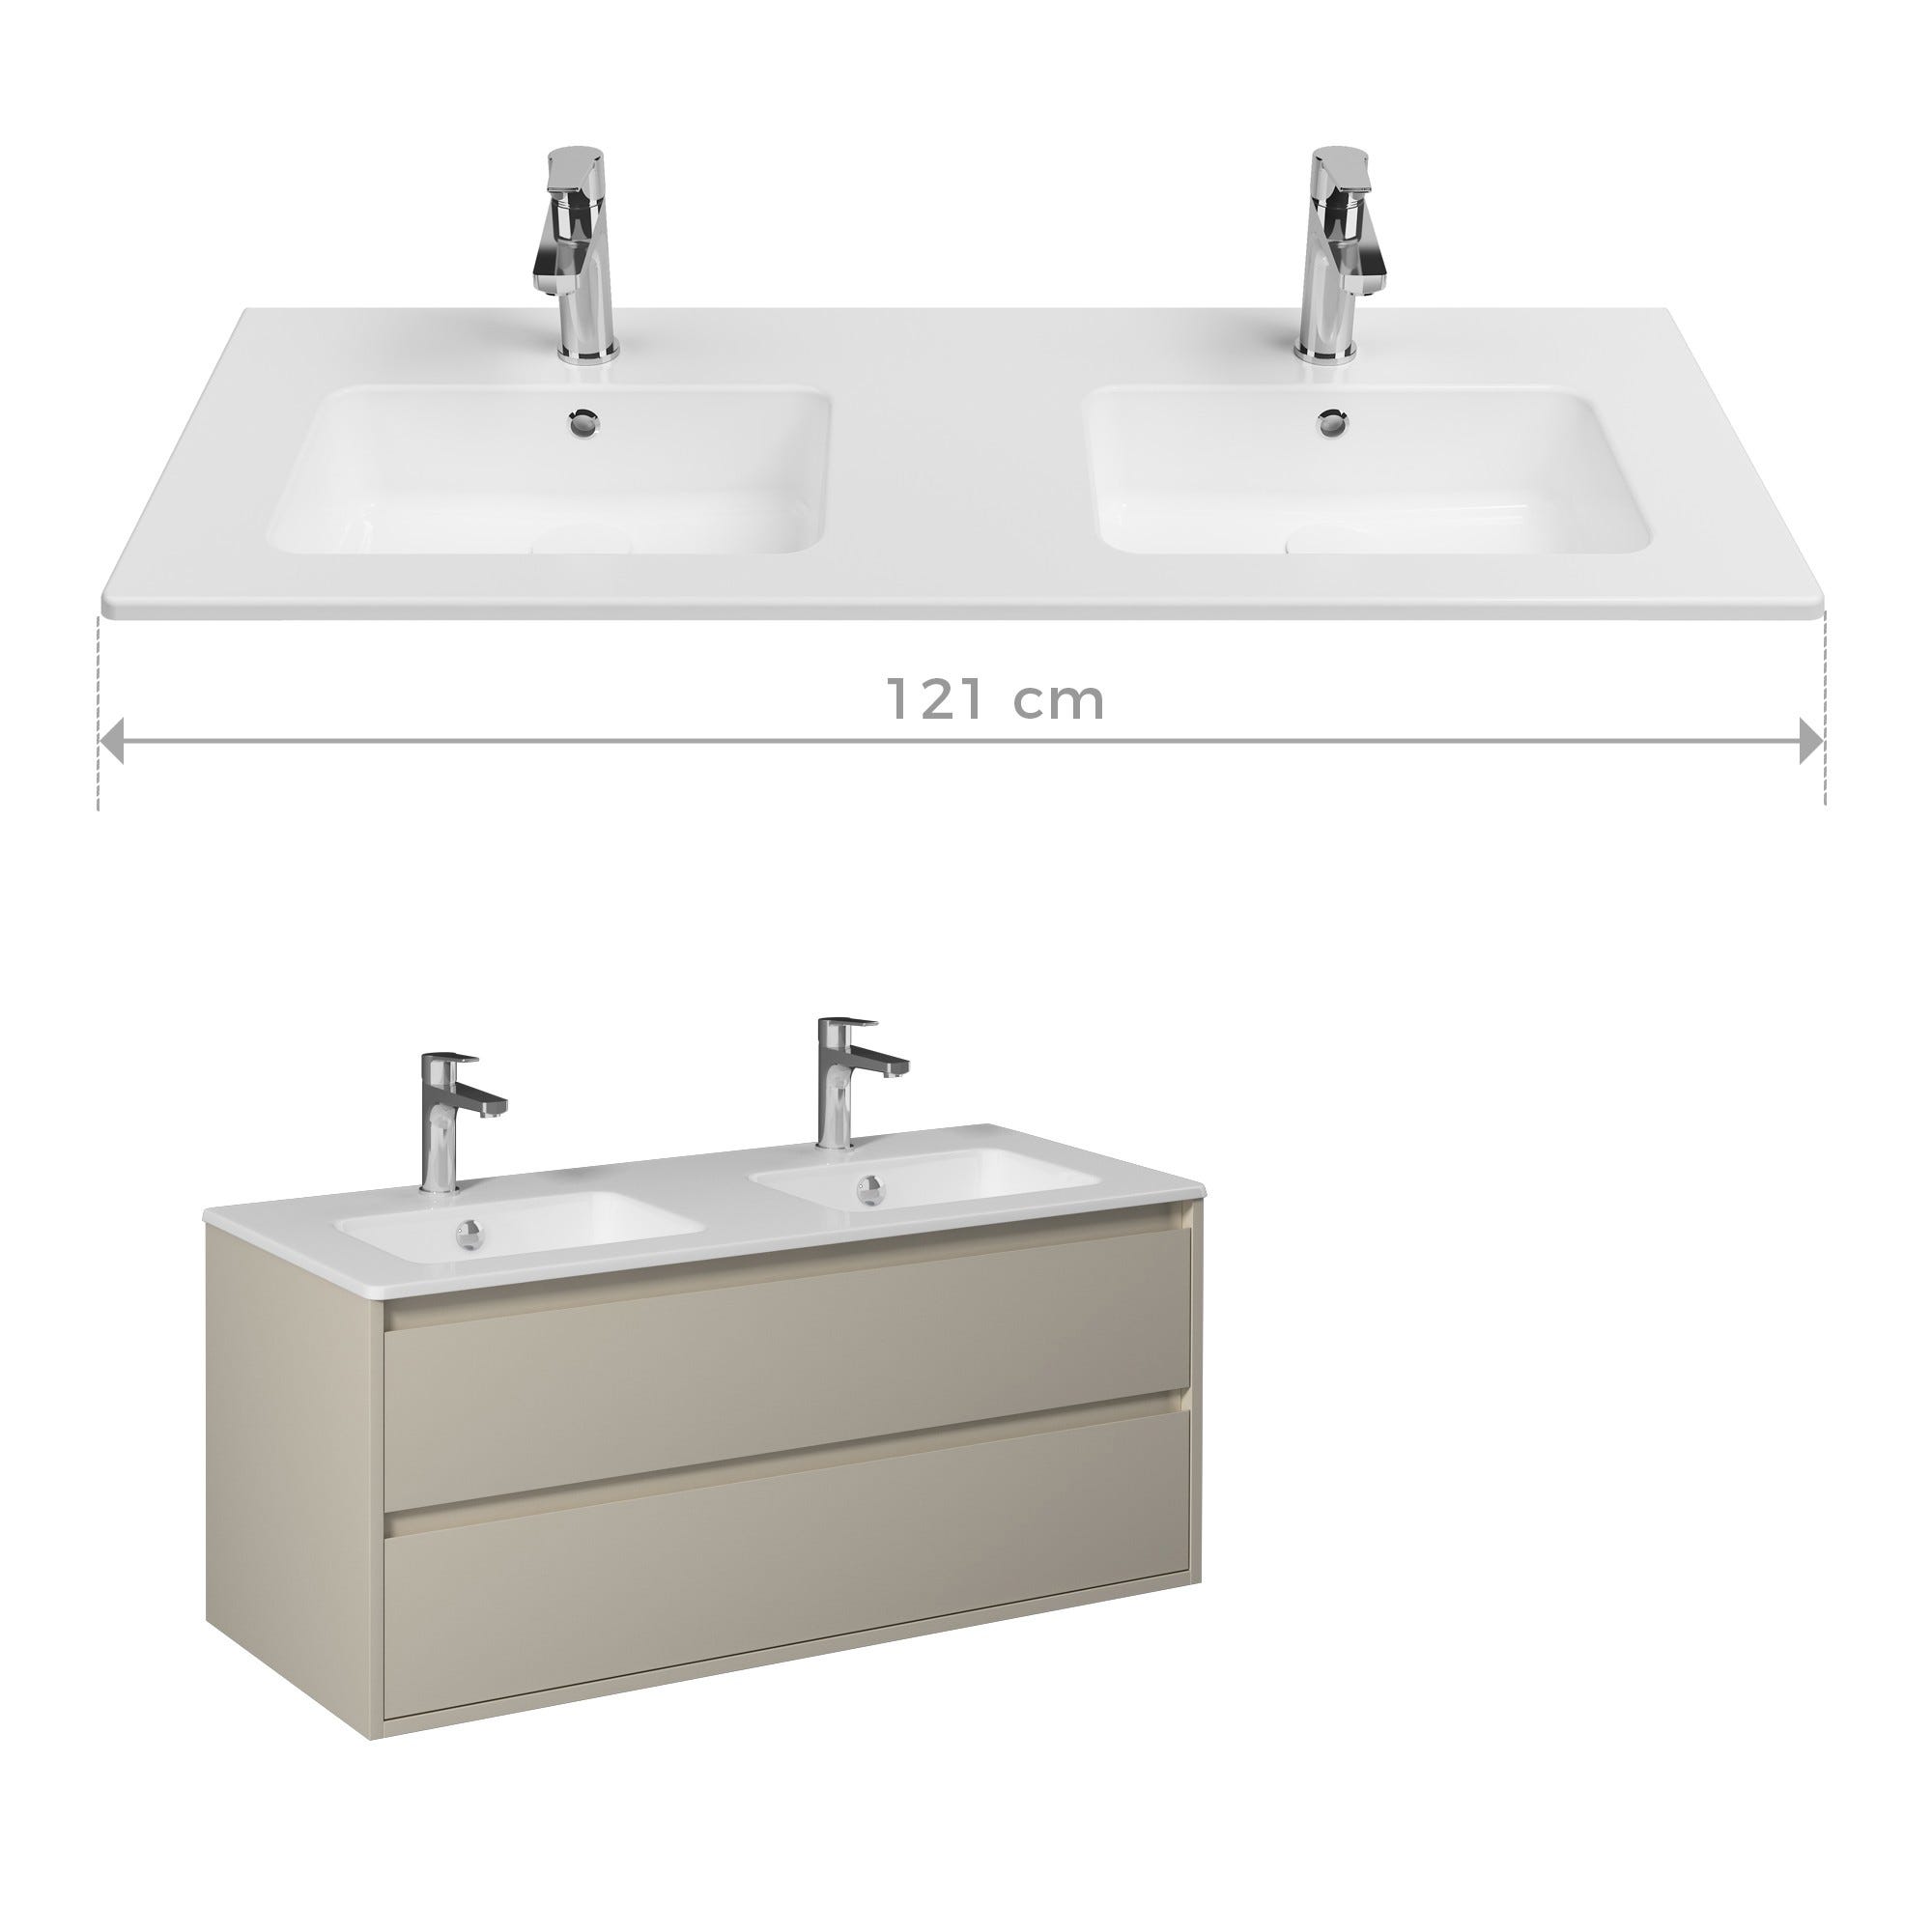 PRO Meuble salle de bain double vasque 2 tiroirs Beige laqué largeur 120 cm 0